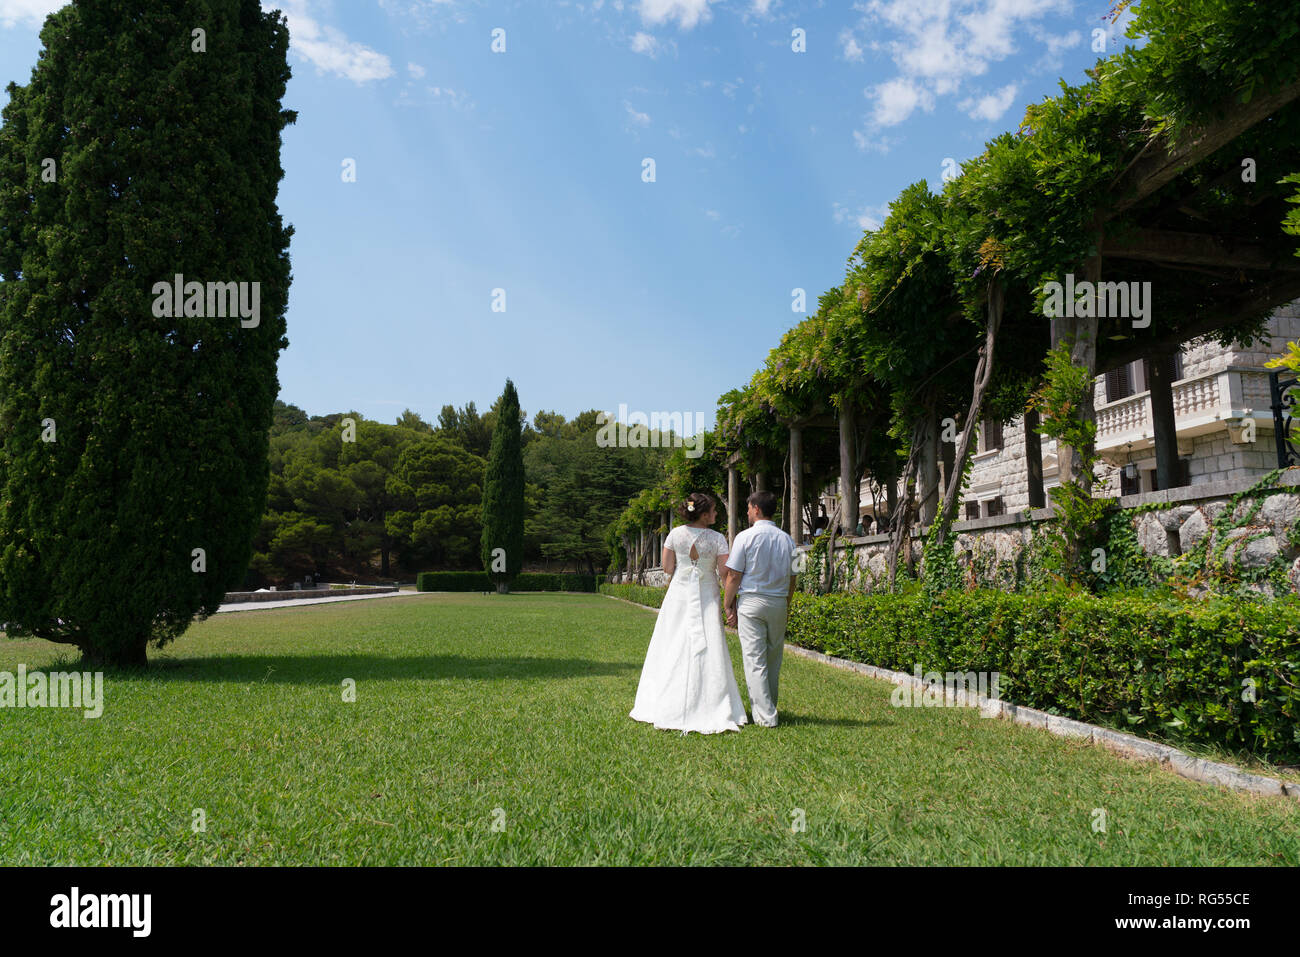 Brautpaar zu Fuß auf den Rasen an einem sonnigen Tag händchenhaltend Stockfoto